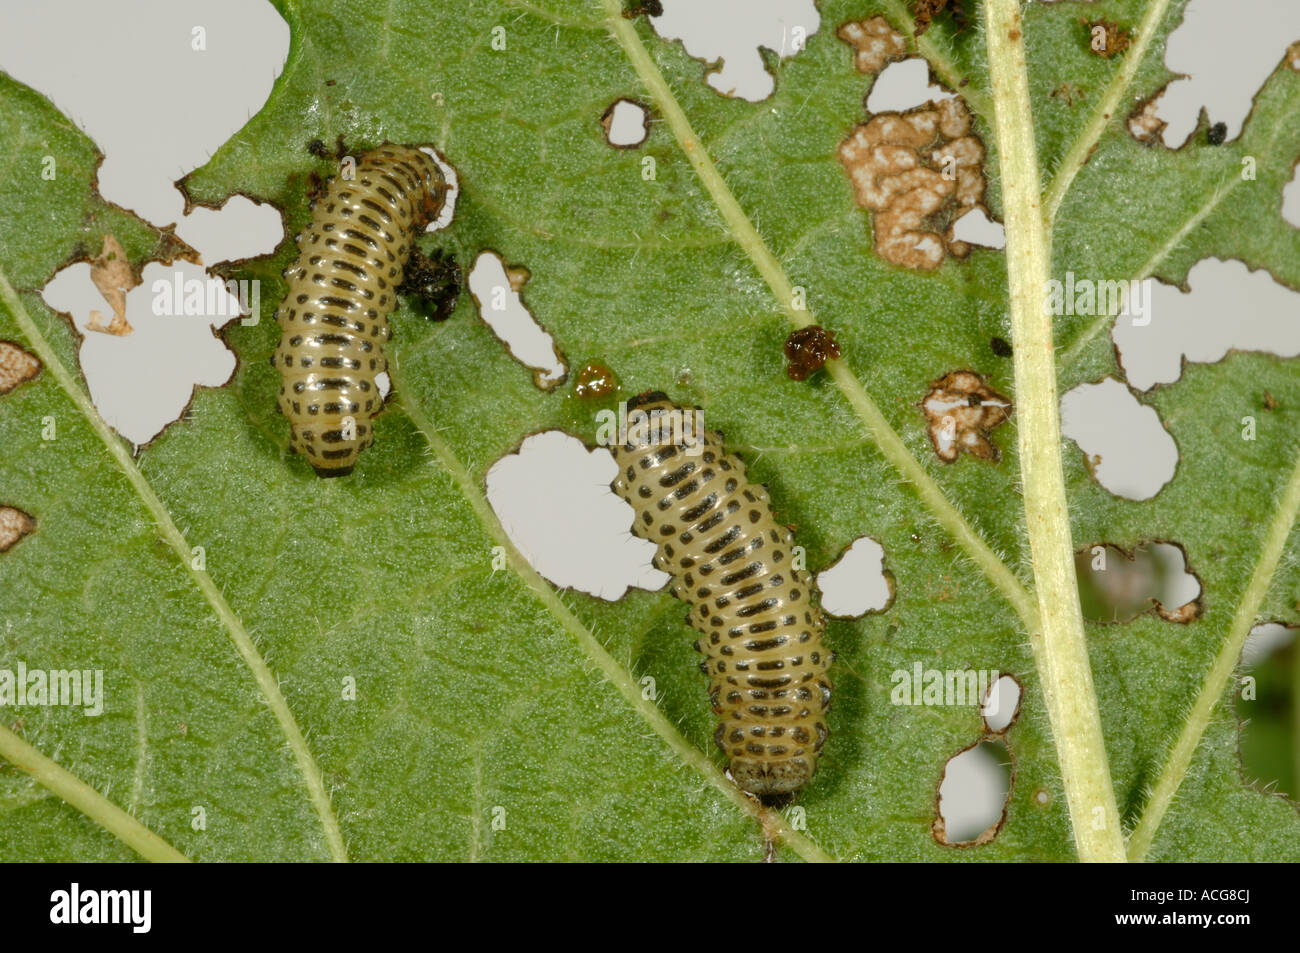 Viburnum beetle Pyrrhalta viburni larve e danni al fogliame pallon di maggio Foto Stock